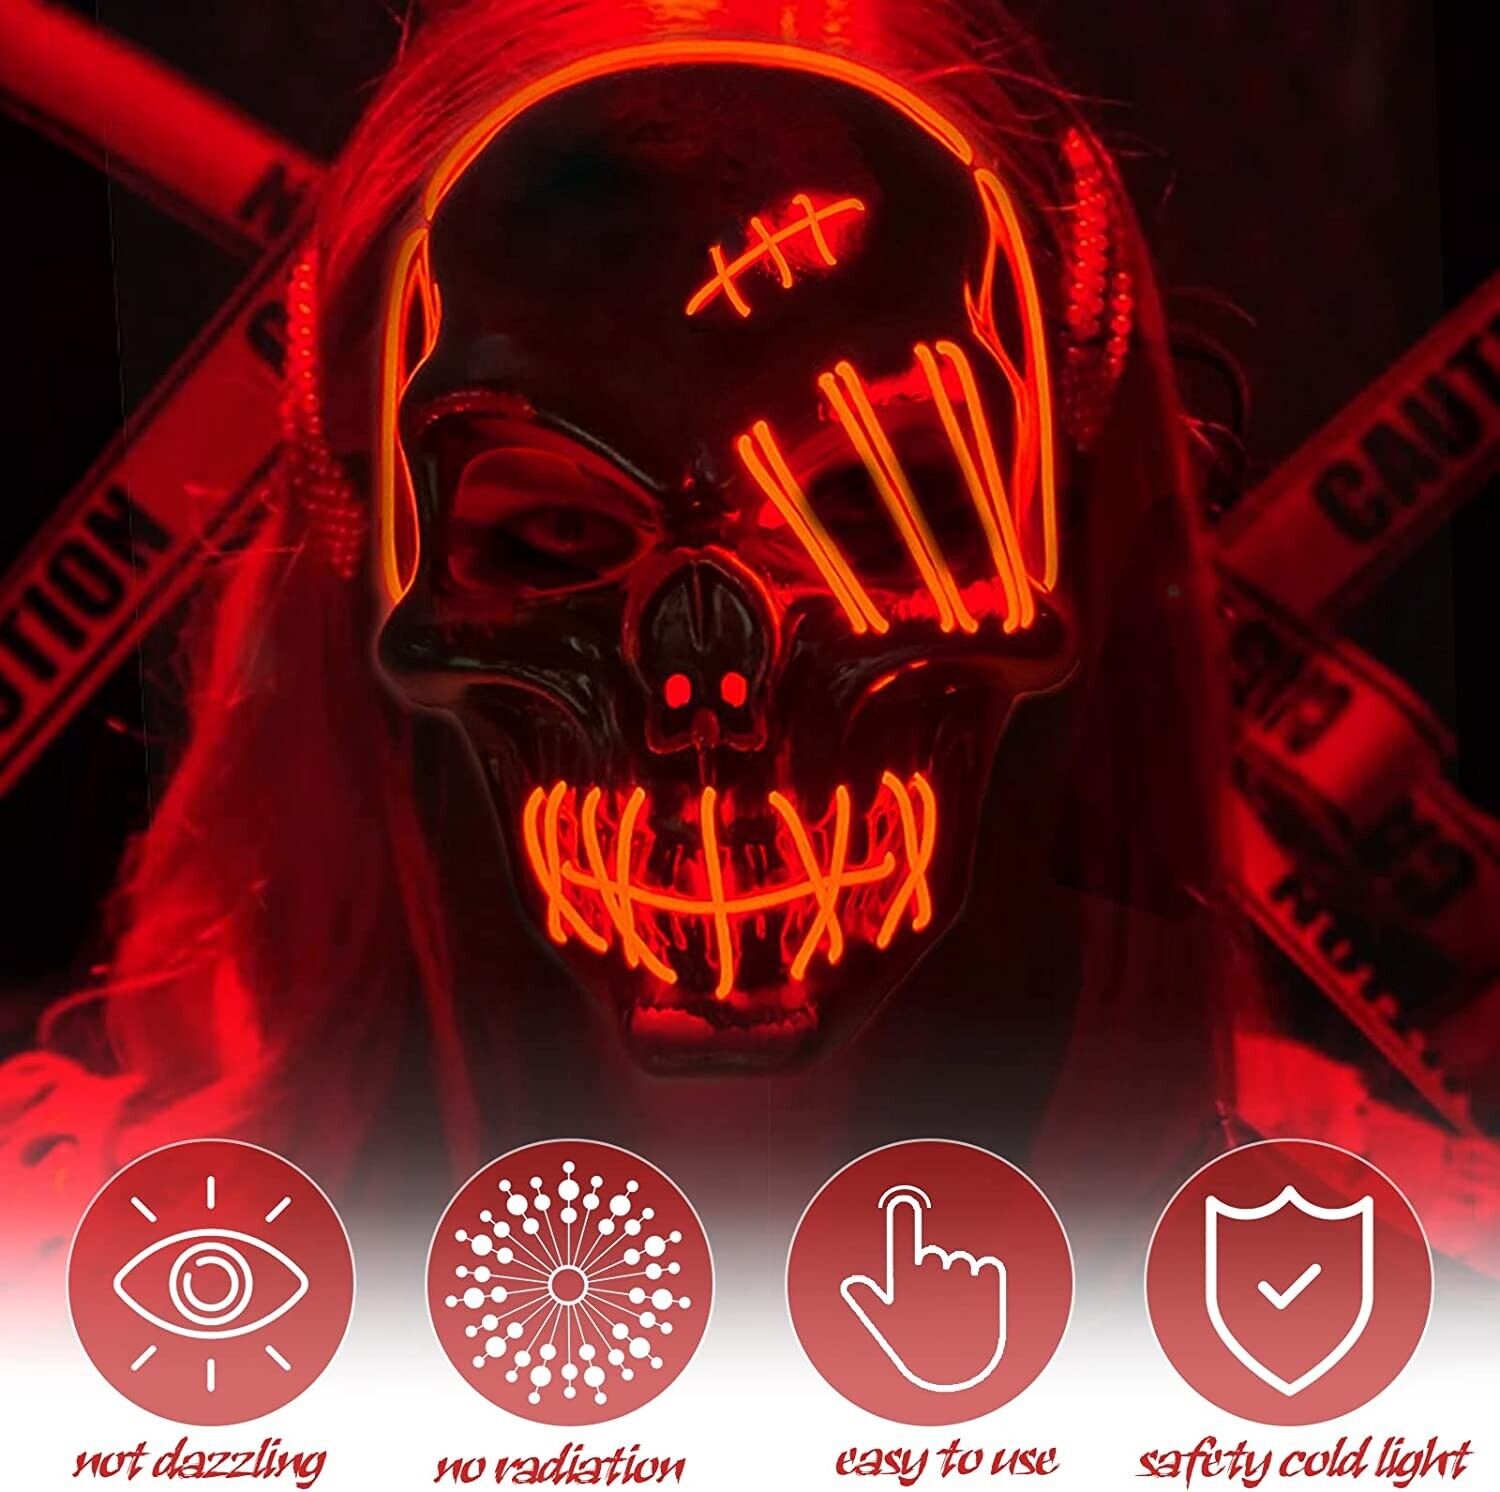 LED Grusel Maske wie aus the Purge - Halloween Horror Verkleidung Gesichtsmaske